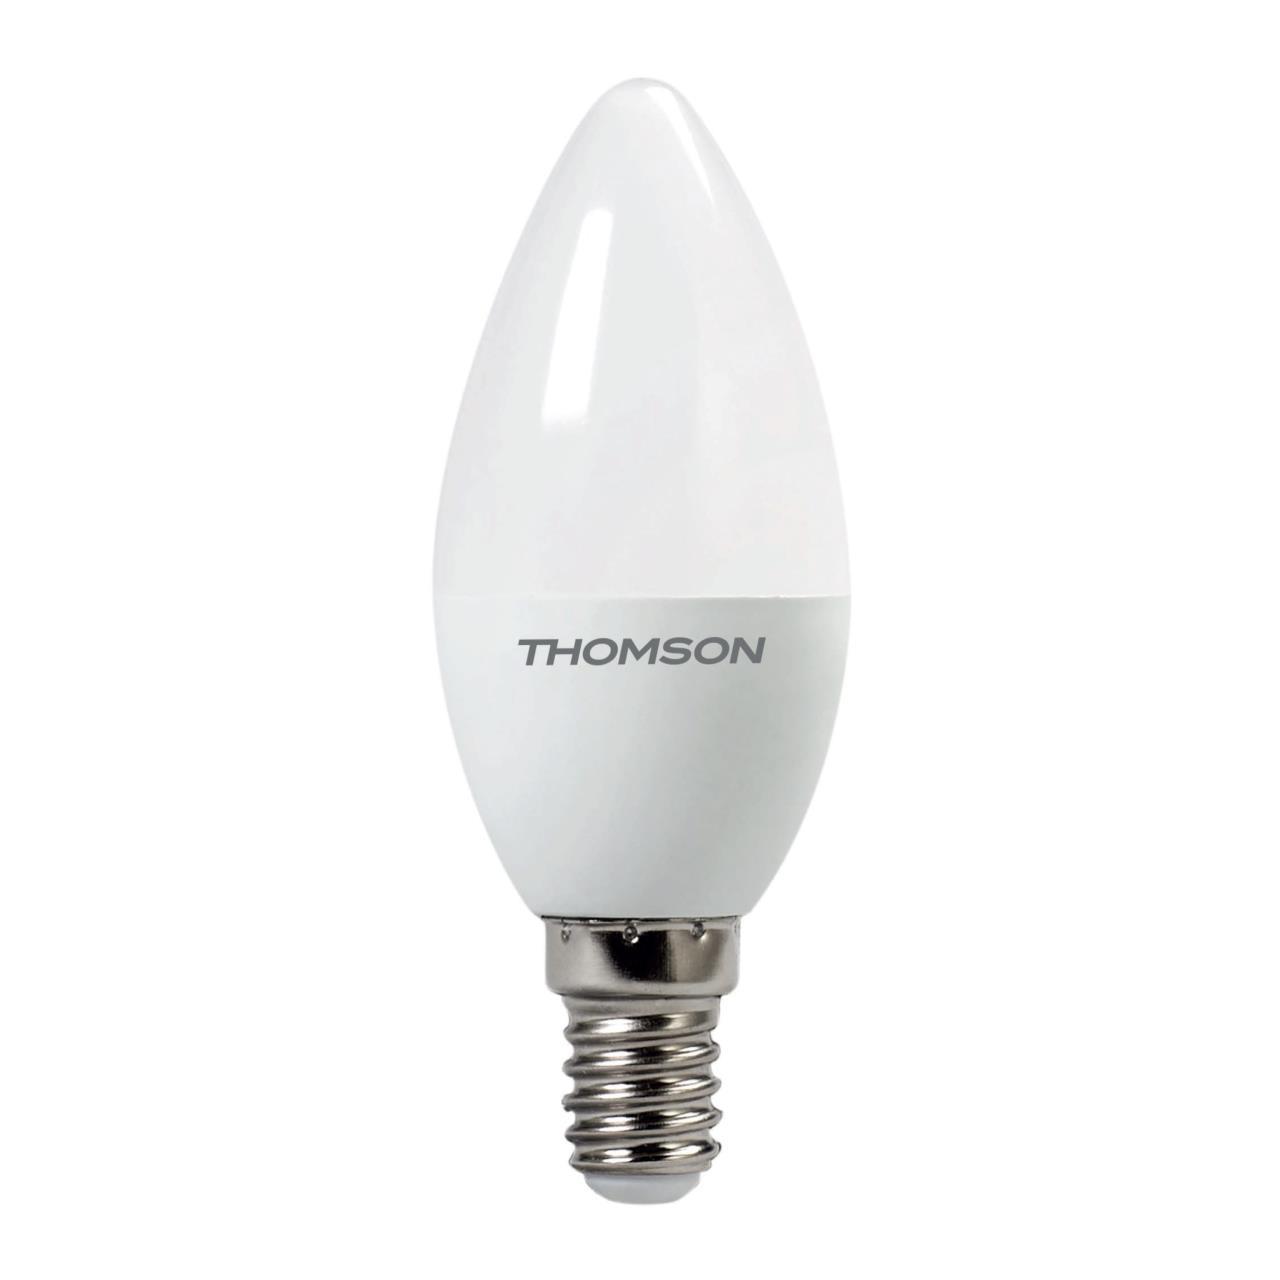 91252935 Лампа светодиодная TH-B2013 E14 54 В 6 Вт свеча матовая 480 Лм теплый белый свет STLM-0522428 THOMSON